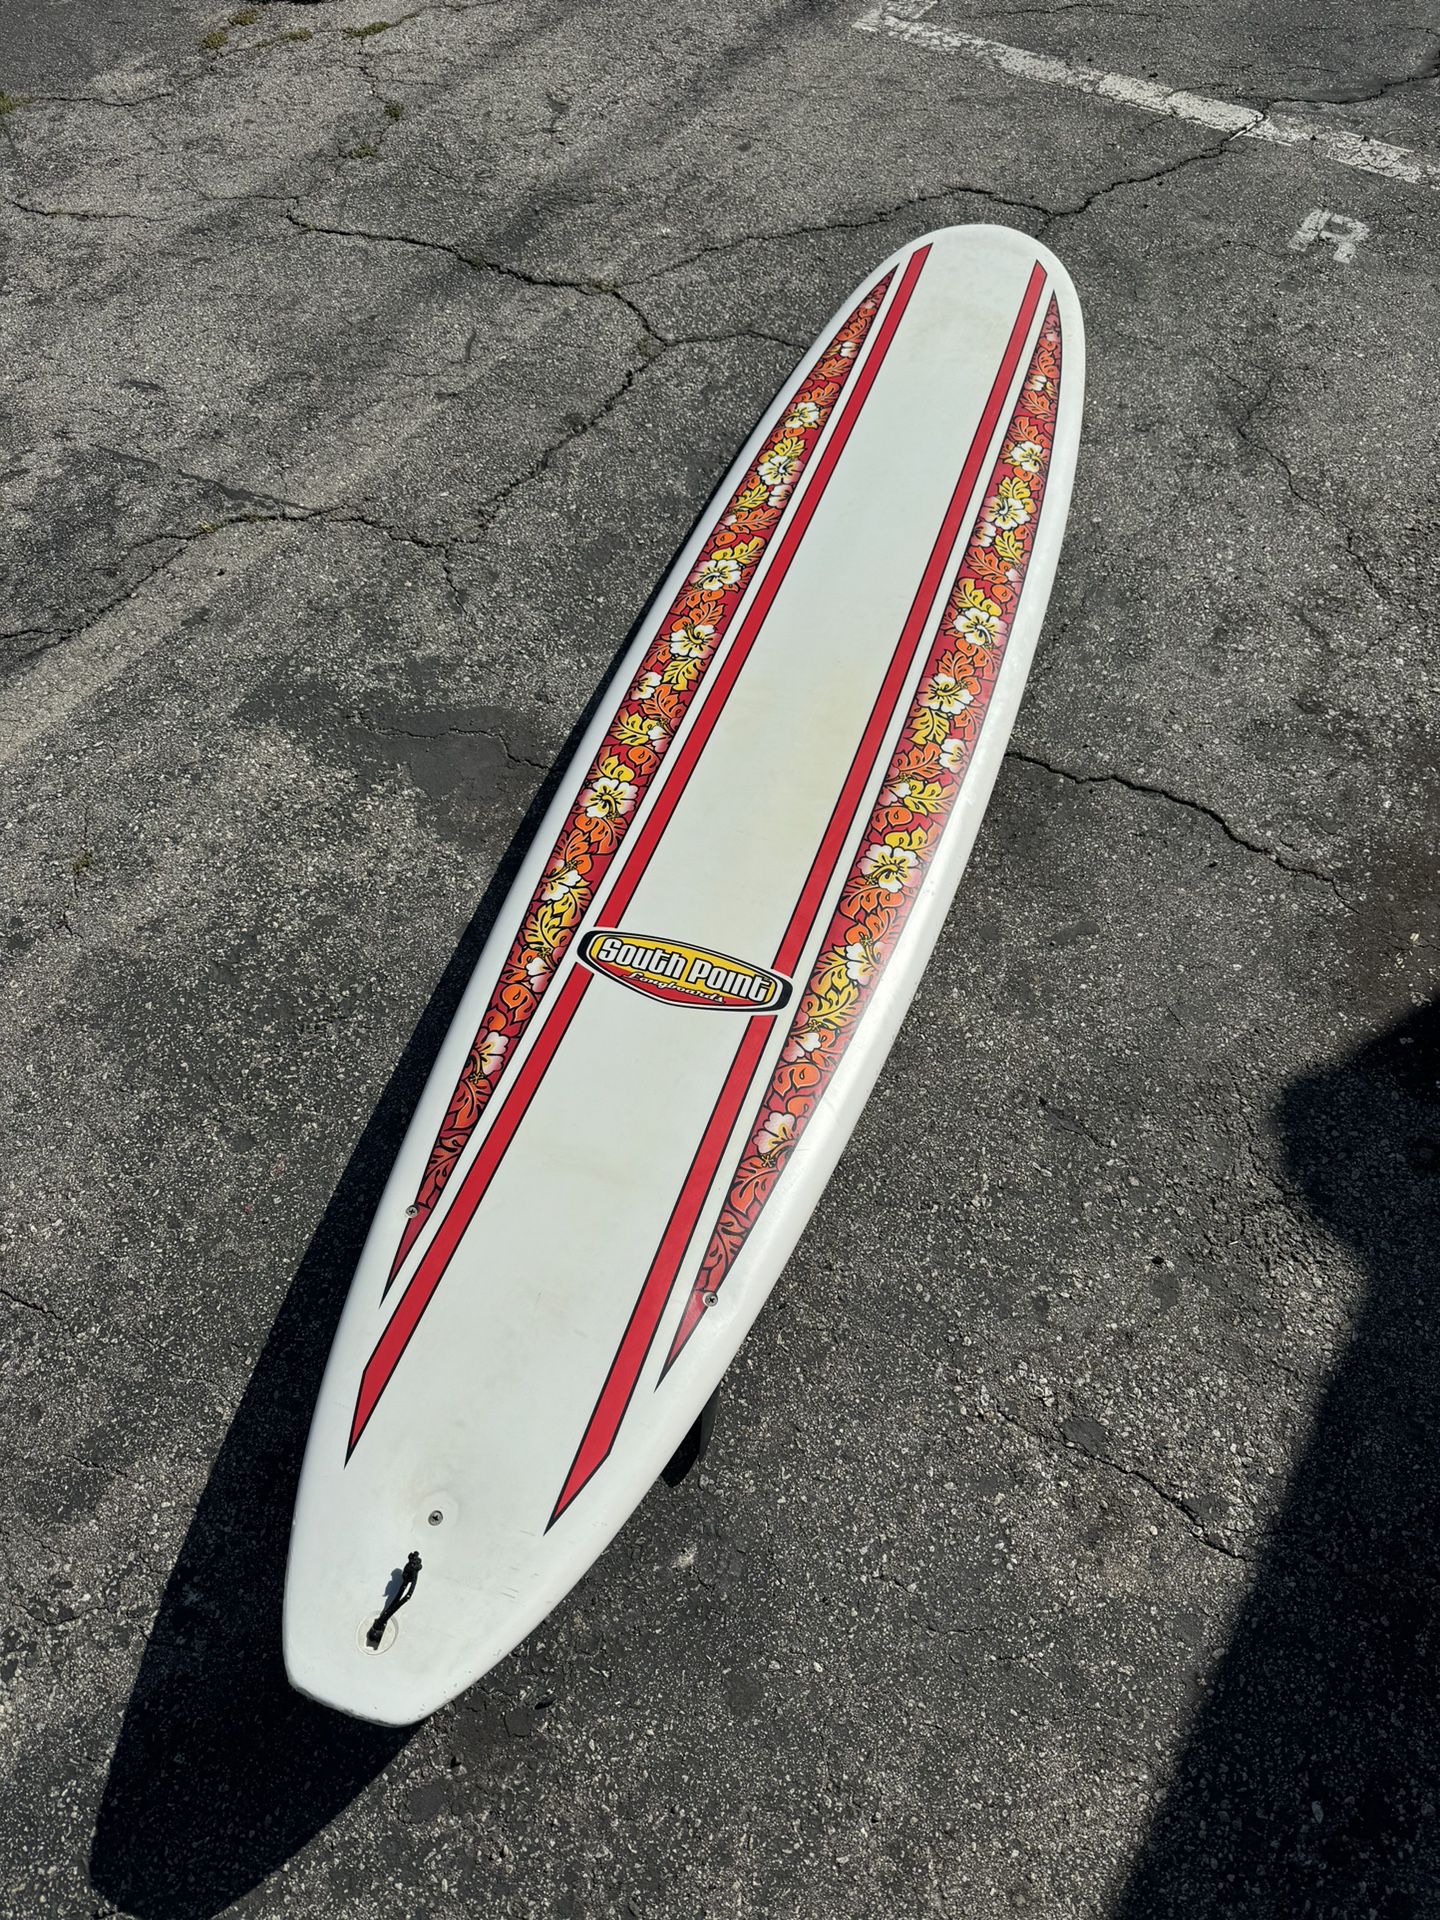 SP 8’6” Longboard Surfboard 